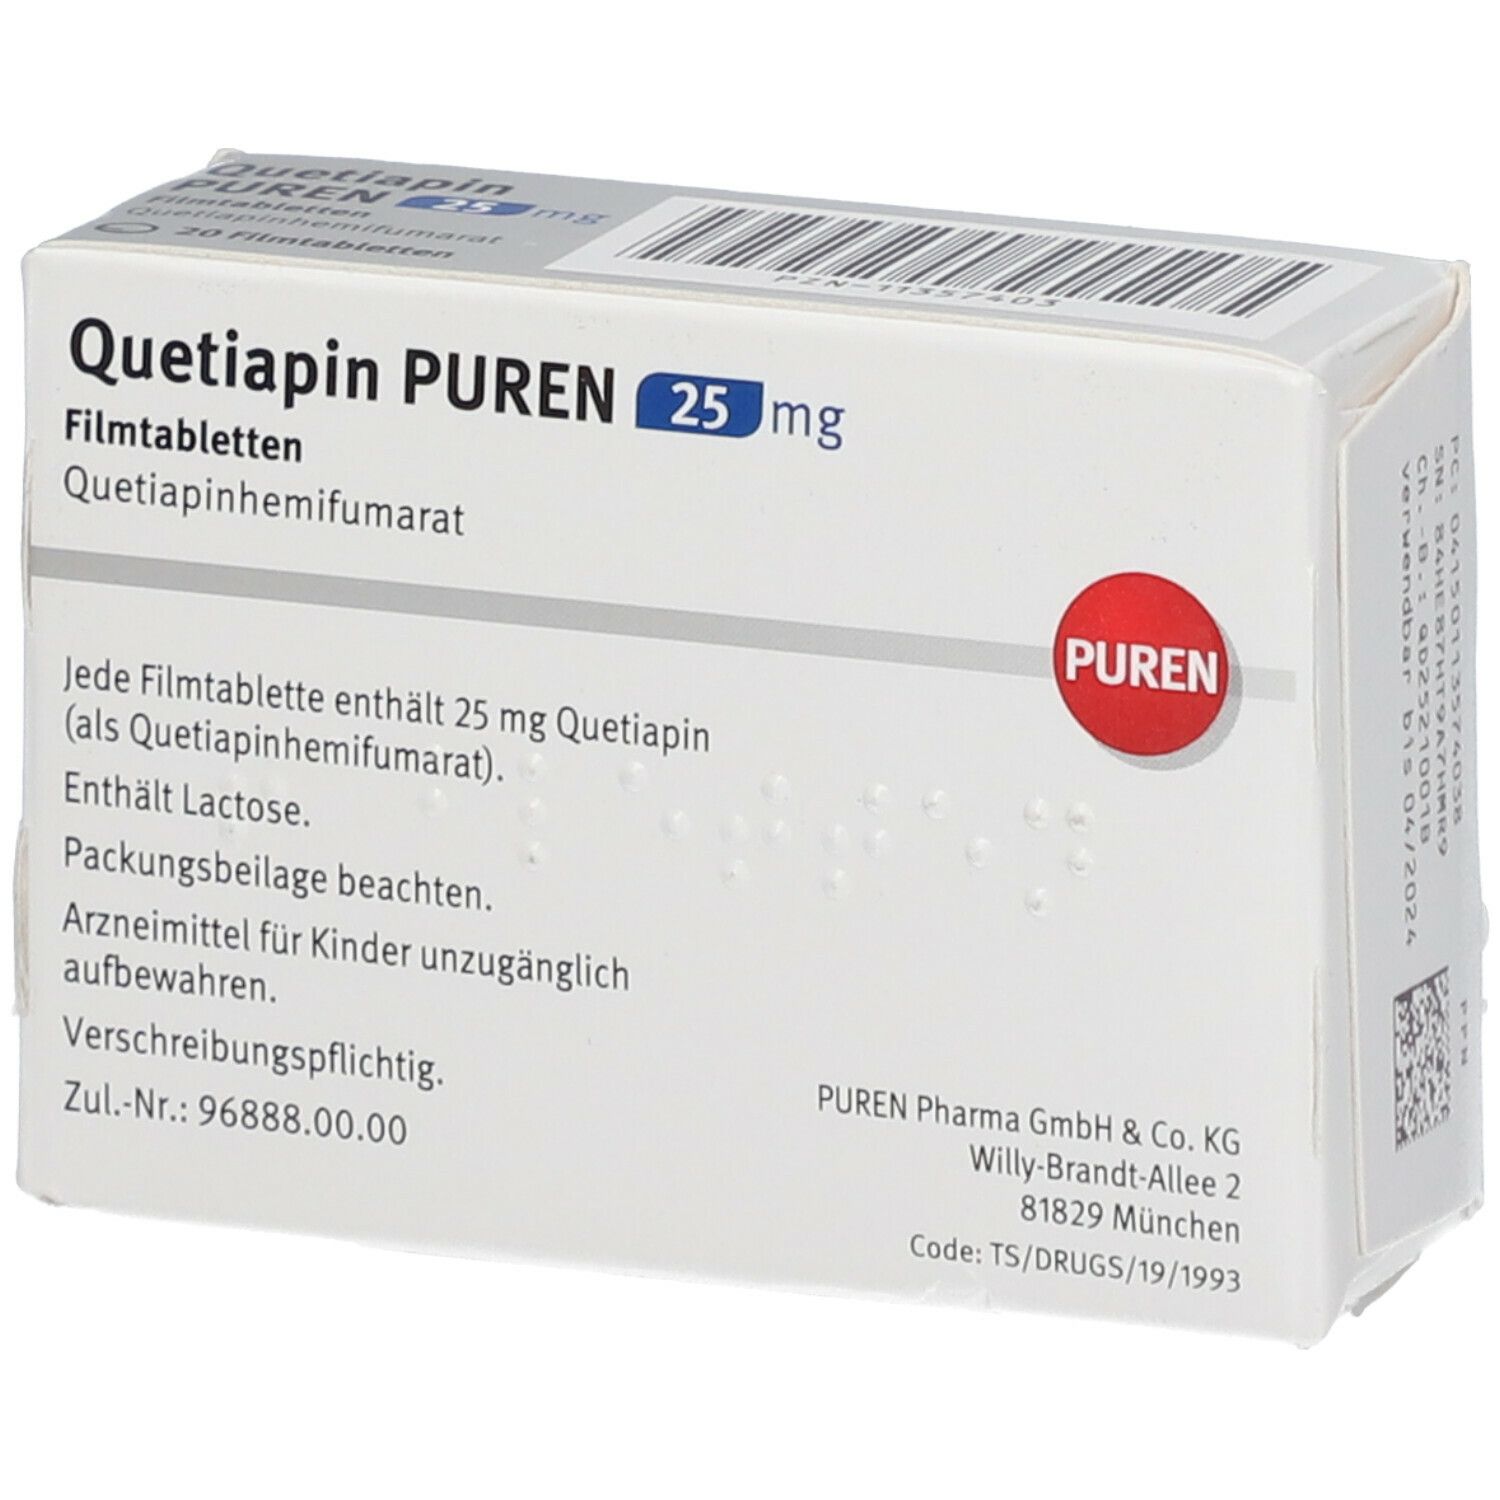 Quetiapin PUREN 25 mg